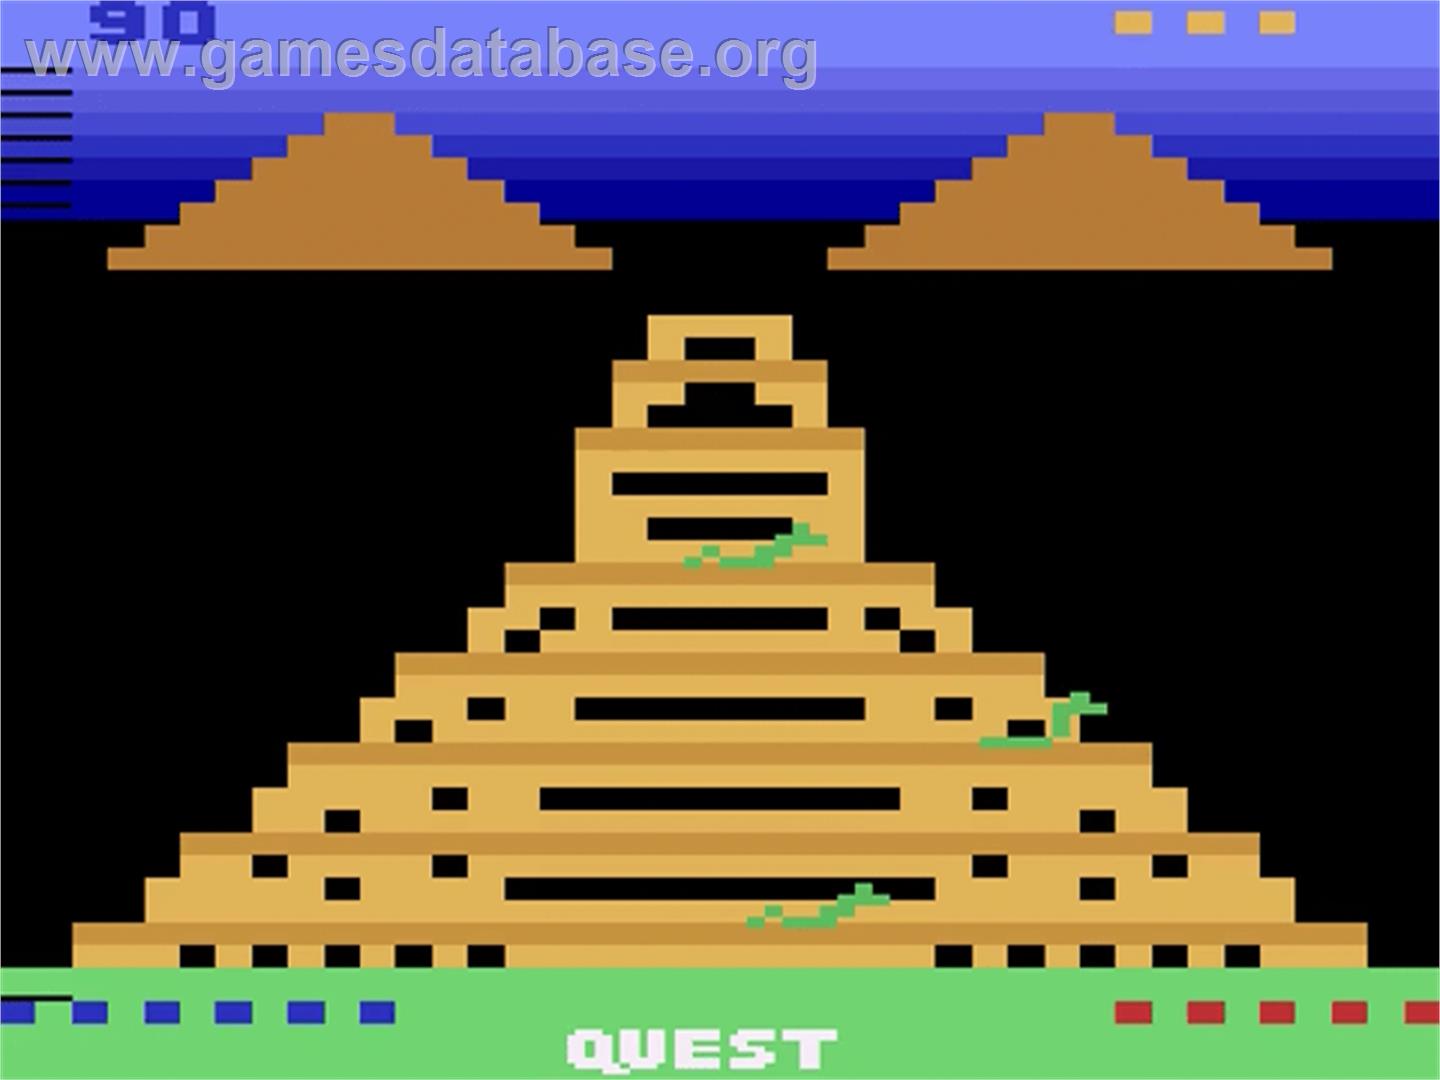 Quest for Quintana Roo - Atari 2600 - Artwork - Title Screen